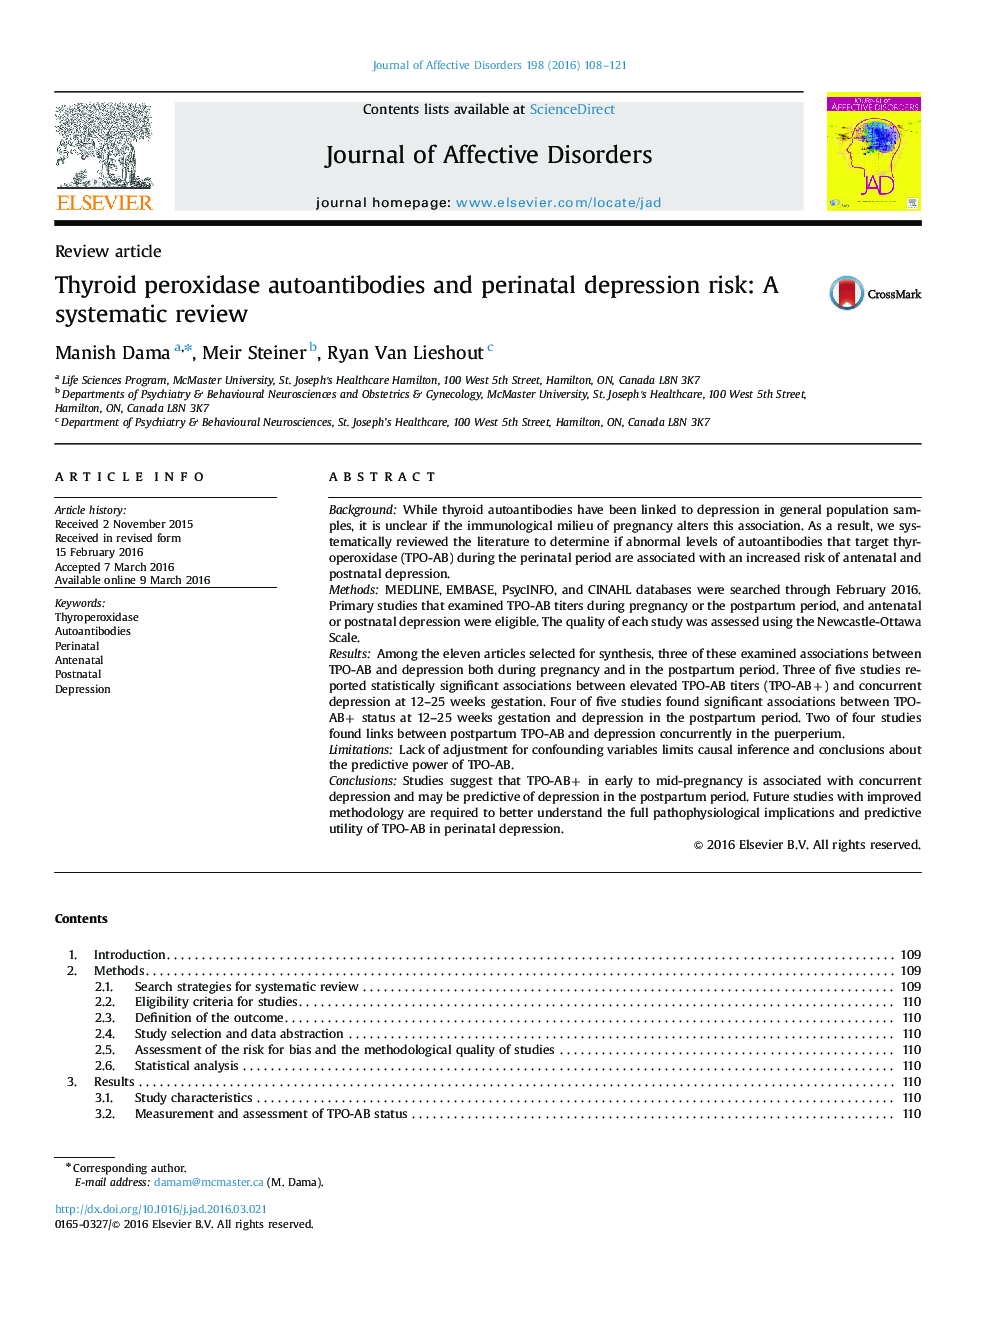 آنتی بادیهای تیروئید پراکسیداز و خطر افسردگی پرناتال: بررسی سیستماتیک 